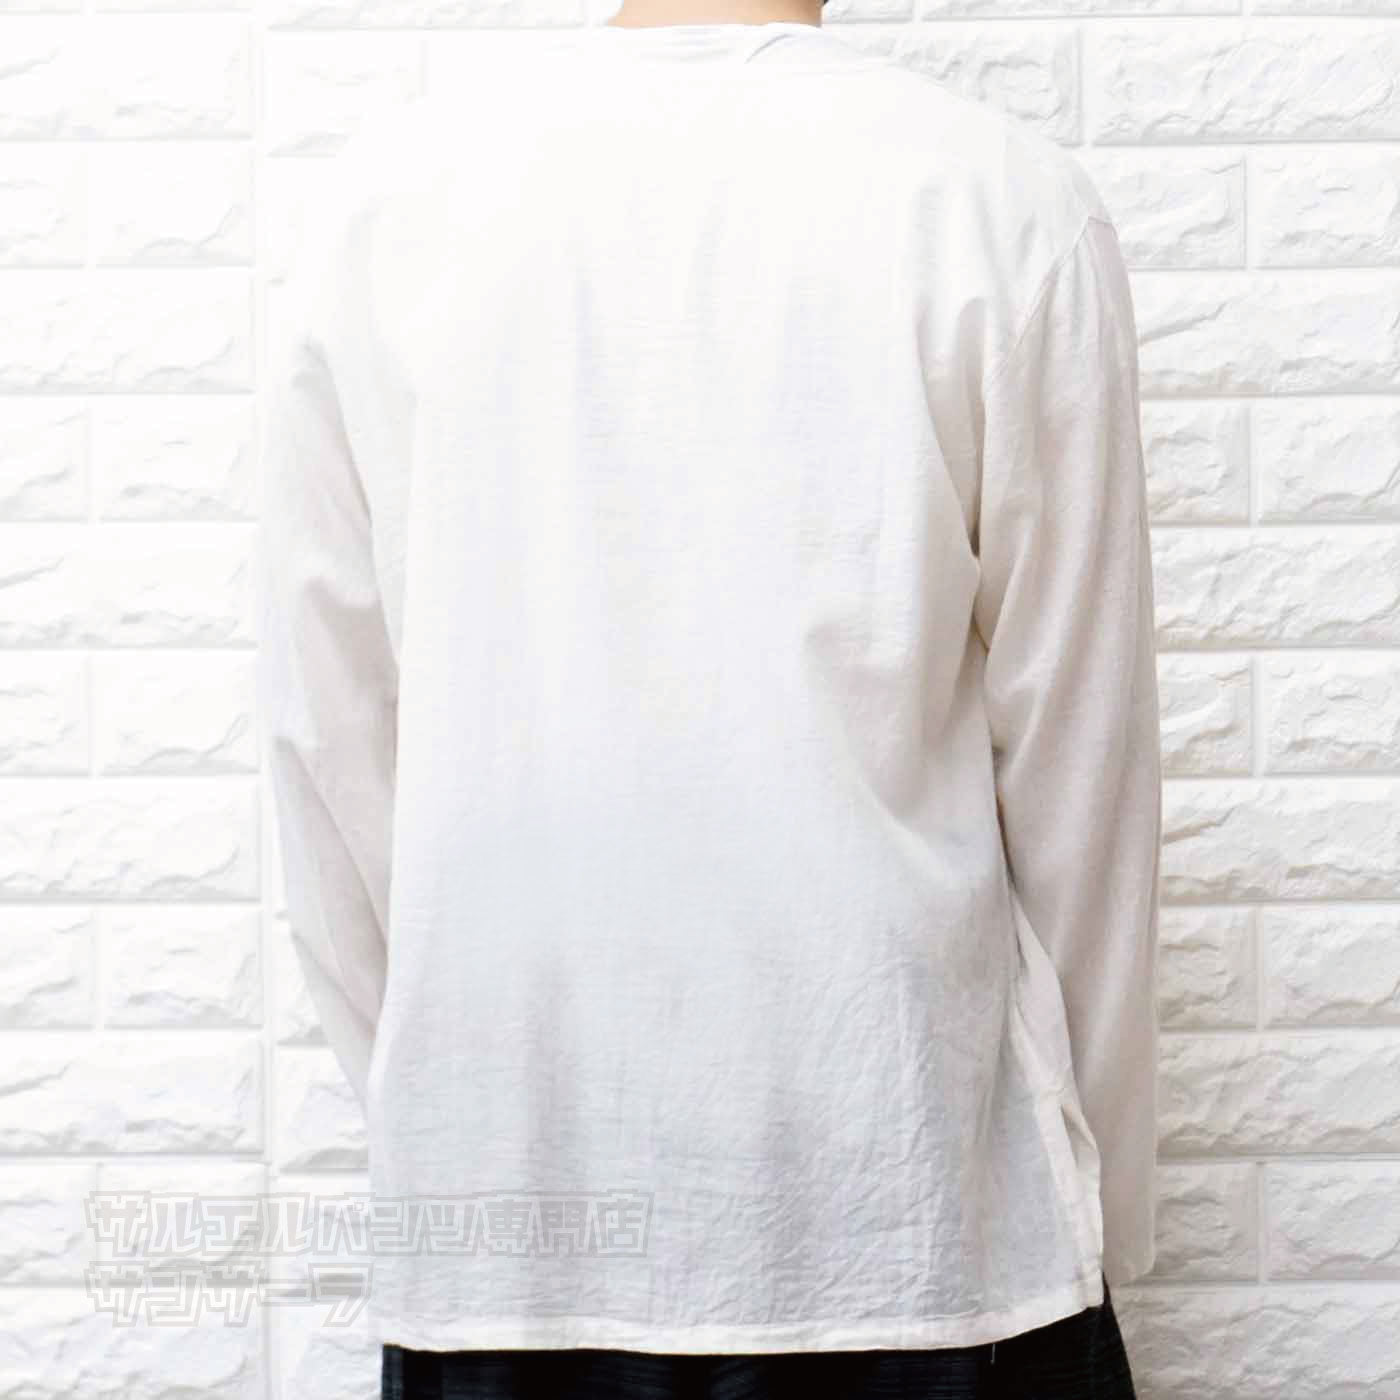 エスニック Tシャツ 長袖 クルタシャツ トップス メンズ レディース ユニセックス ハス 蓮の花 大きめサイズ ゆったり アジアン ファッションブラック